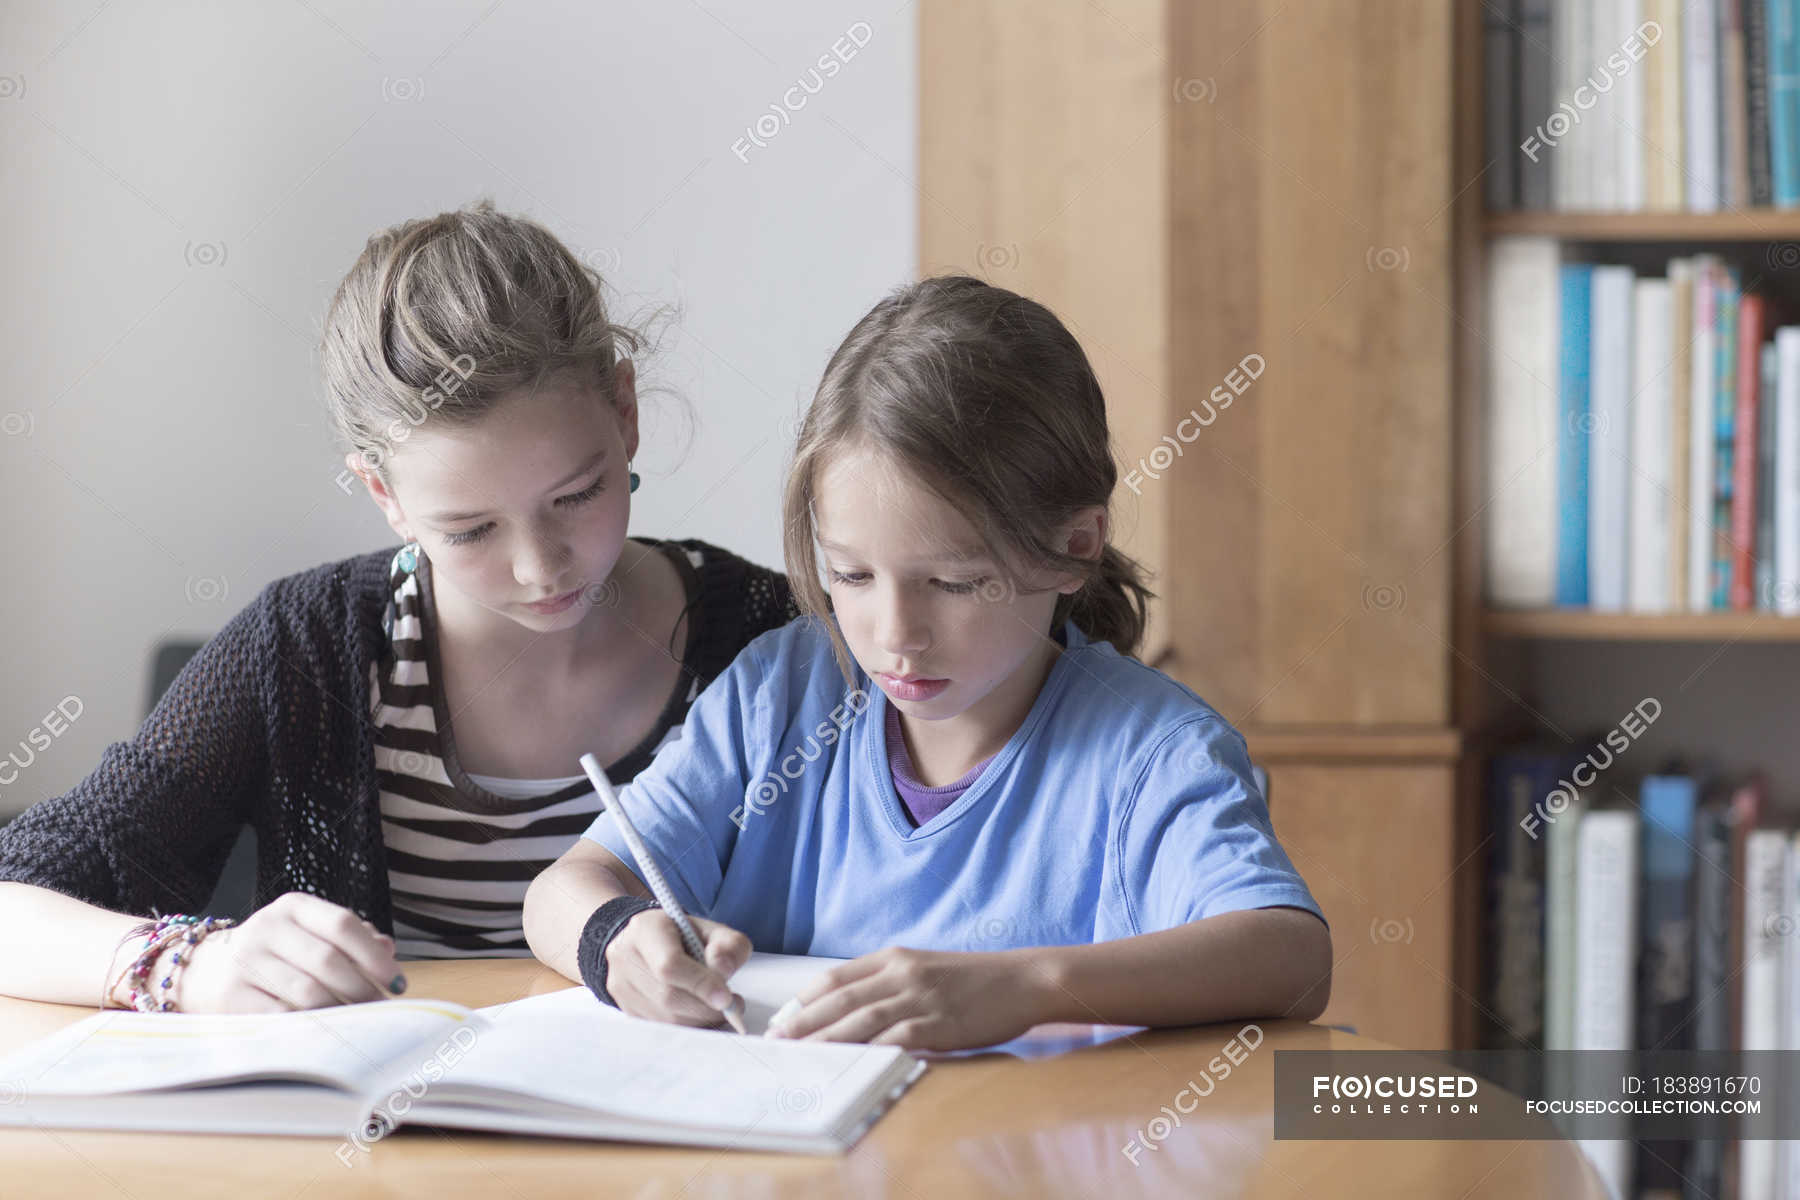 Брат помогает уроки. Старшие помогают младшим. Старшая сестра помогла младшему. Сестра делает уроки. Старшая сестра помогает.